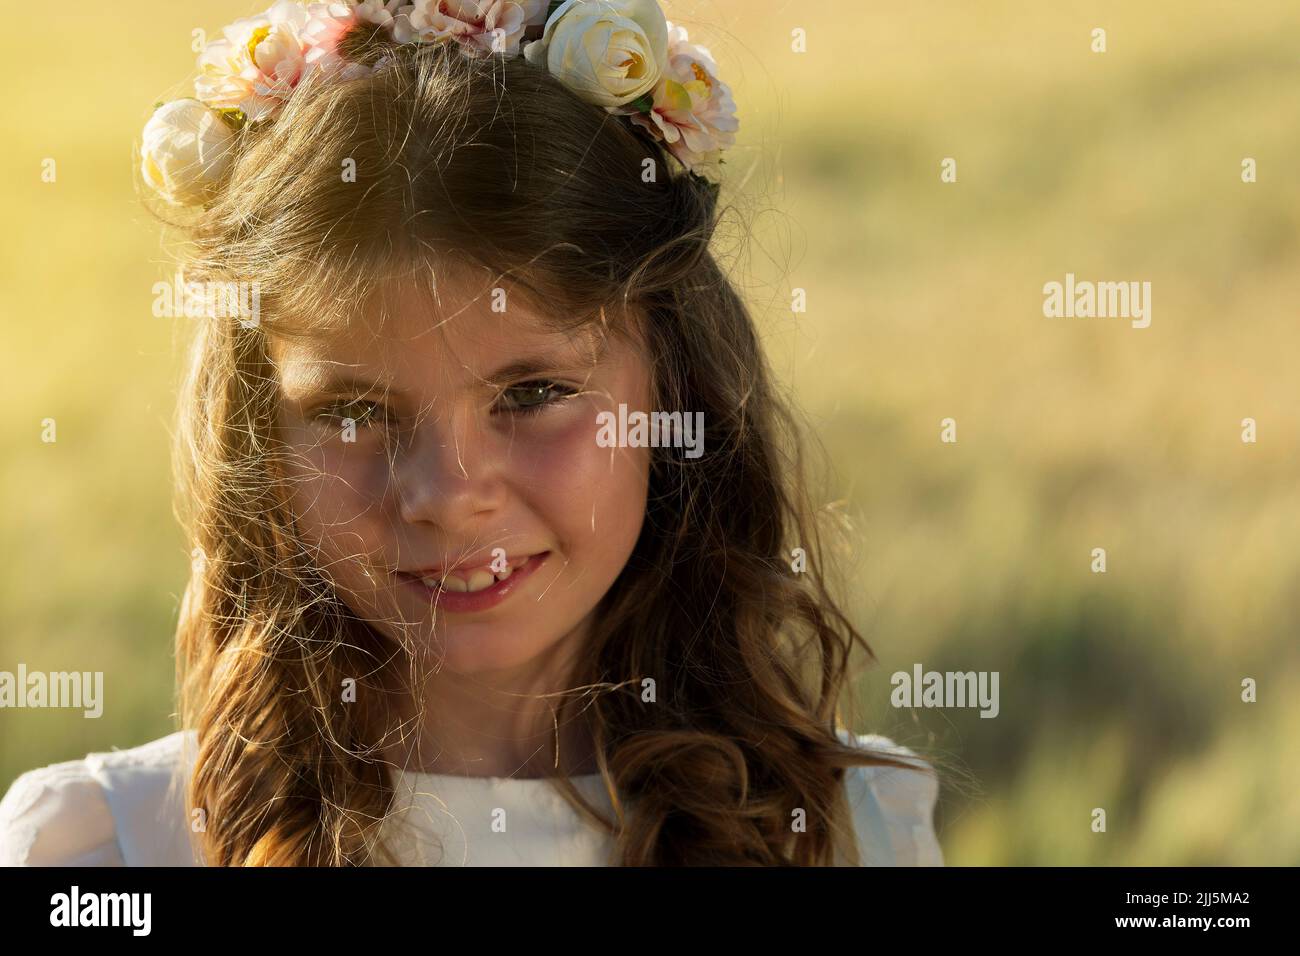 Fille souriante portant une couronne de fleur Banque D'Images